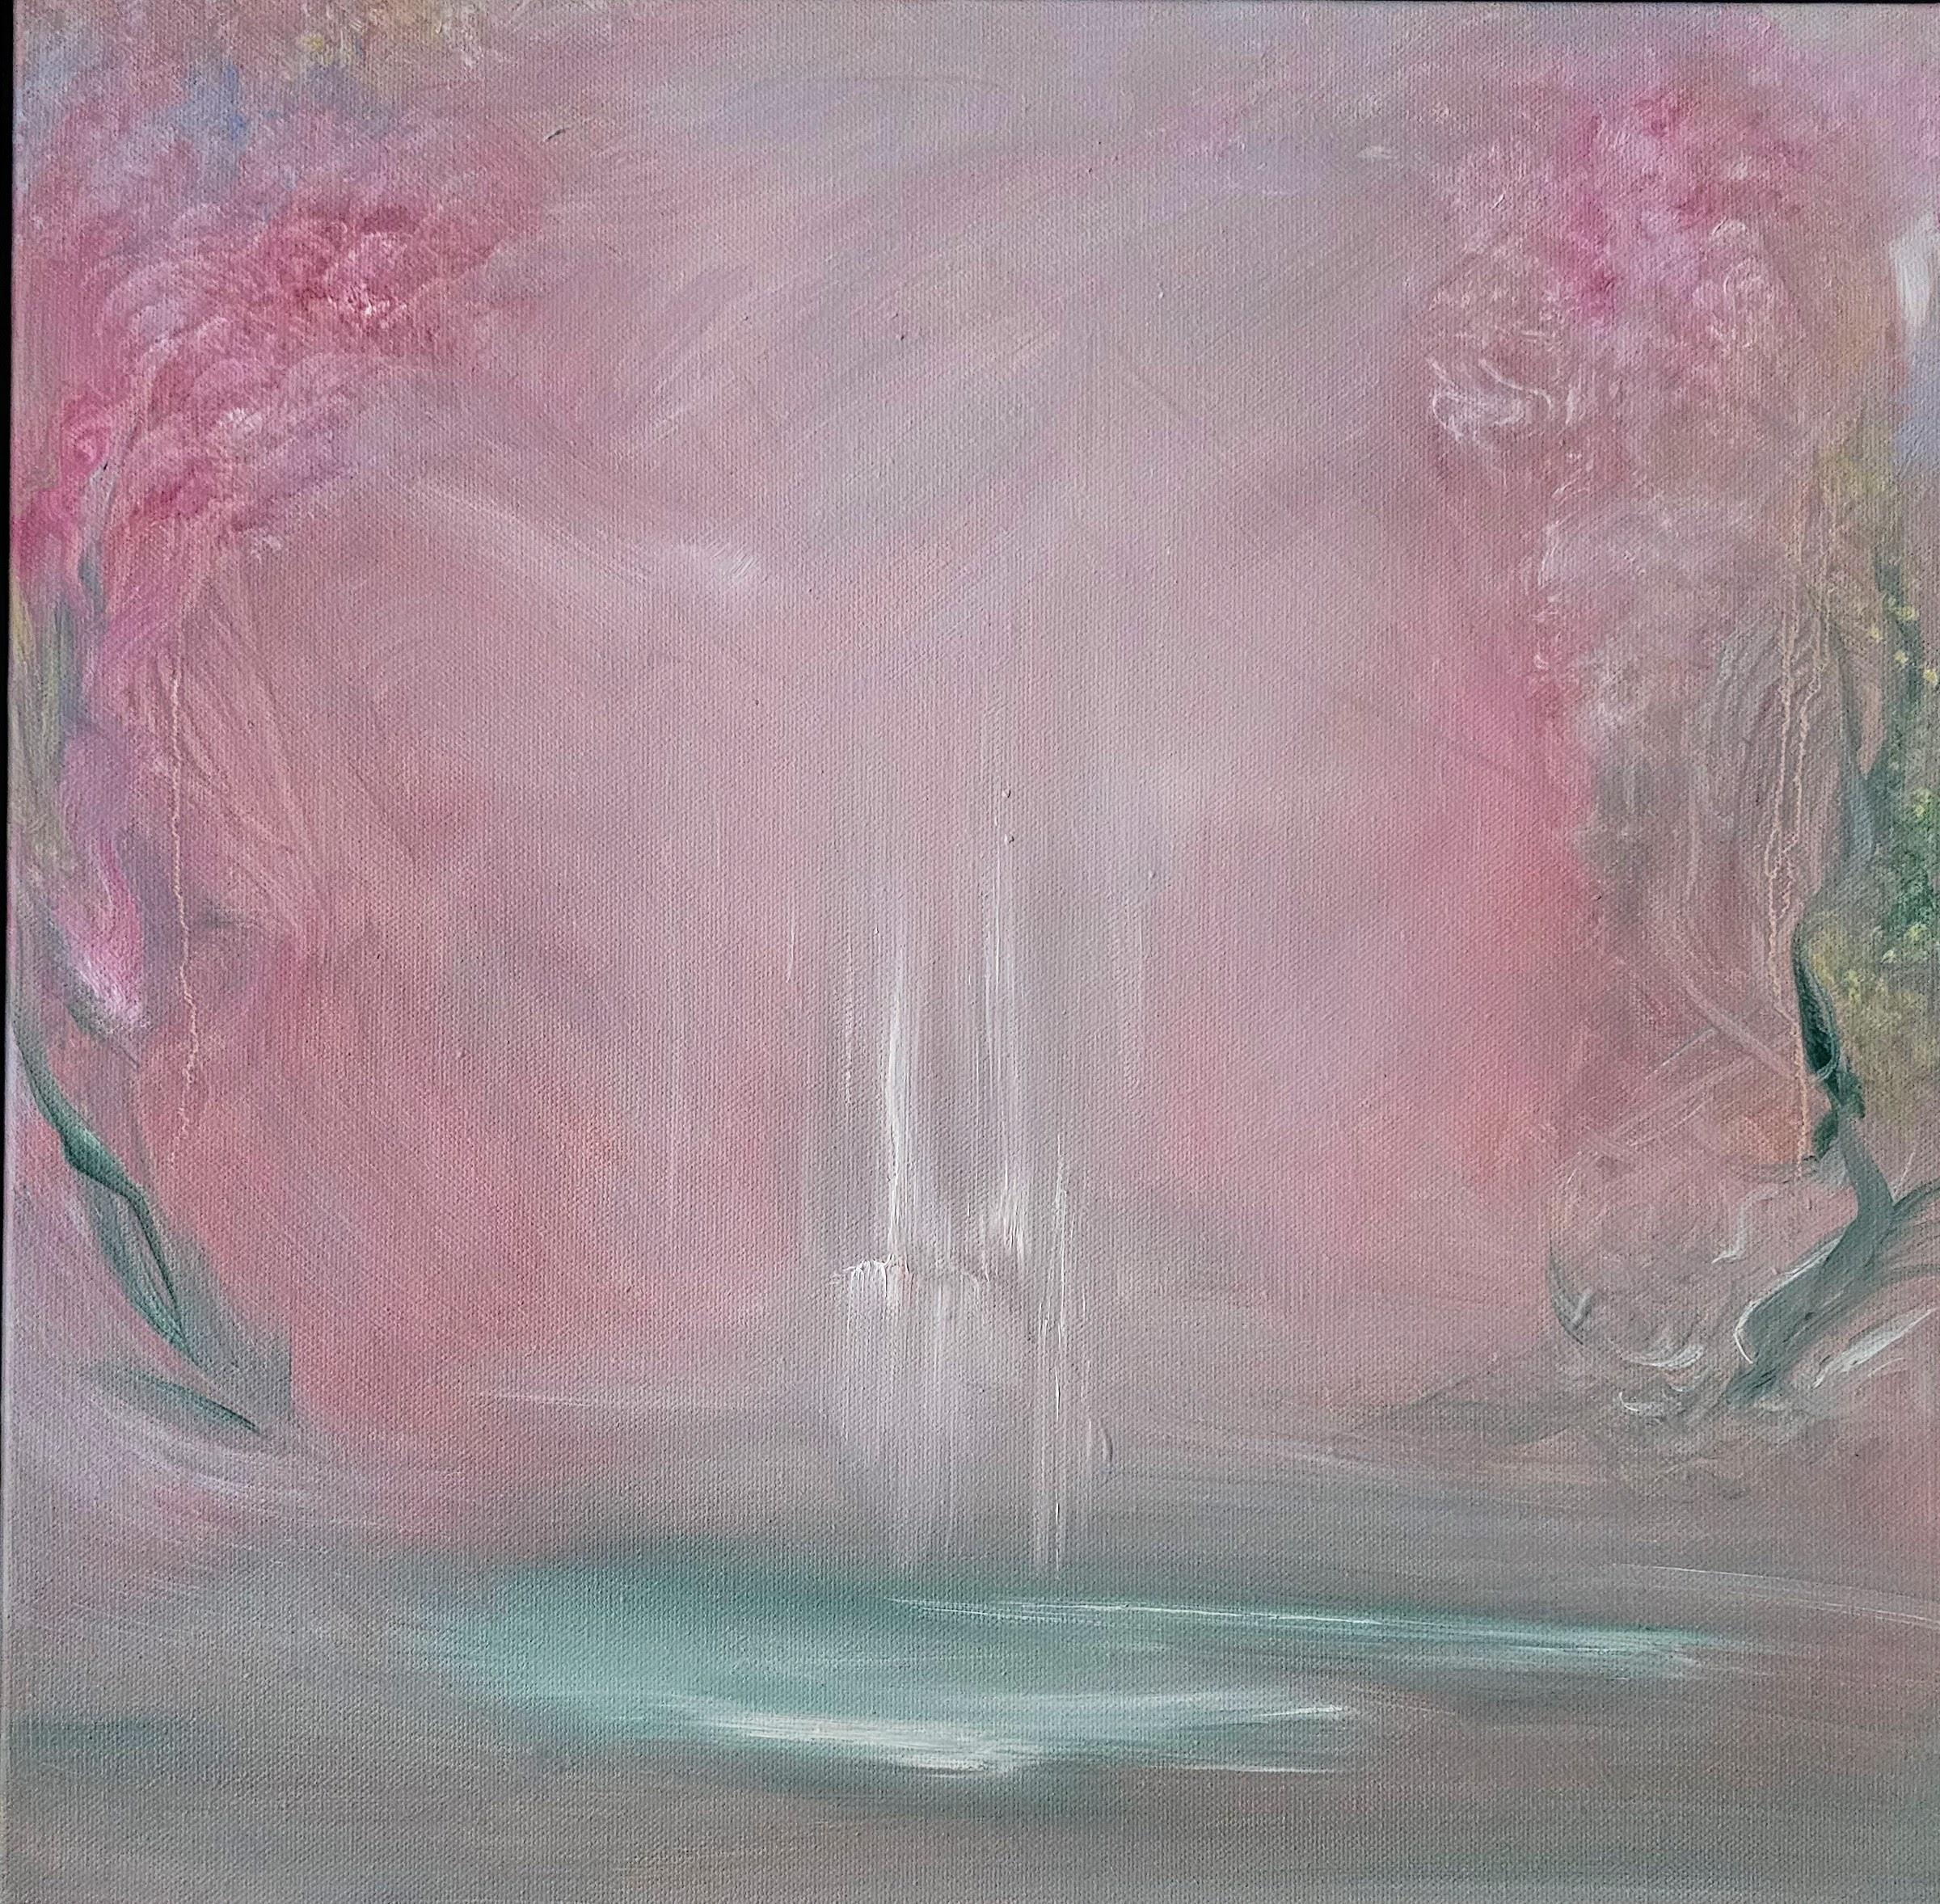 Abstract Painting Jennifer L. Baker - Aquarelle rose - Peinture de nature florale abstraite encadrée